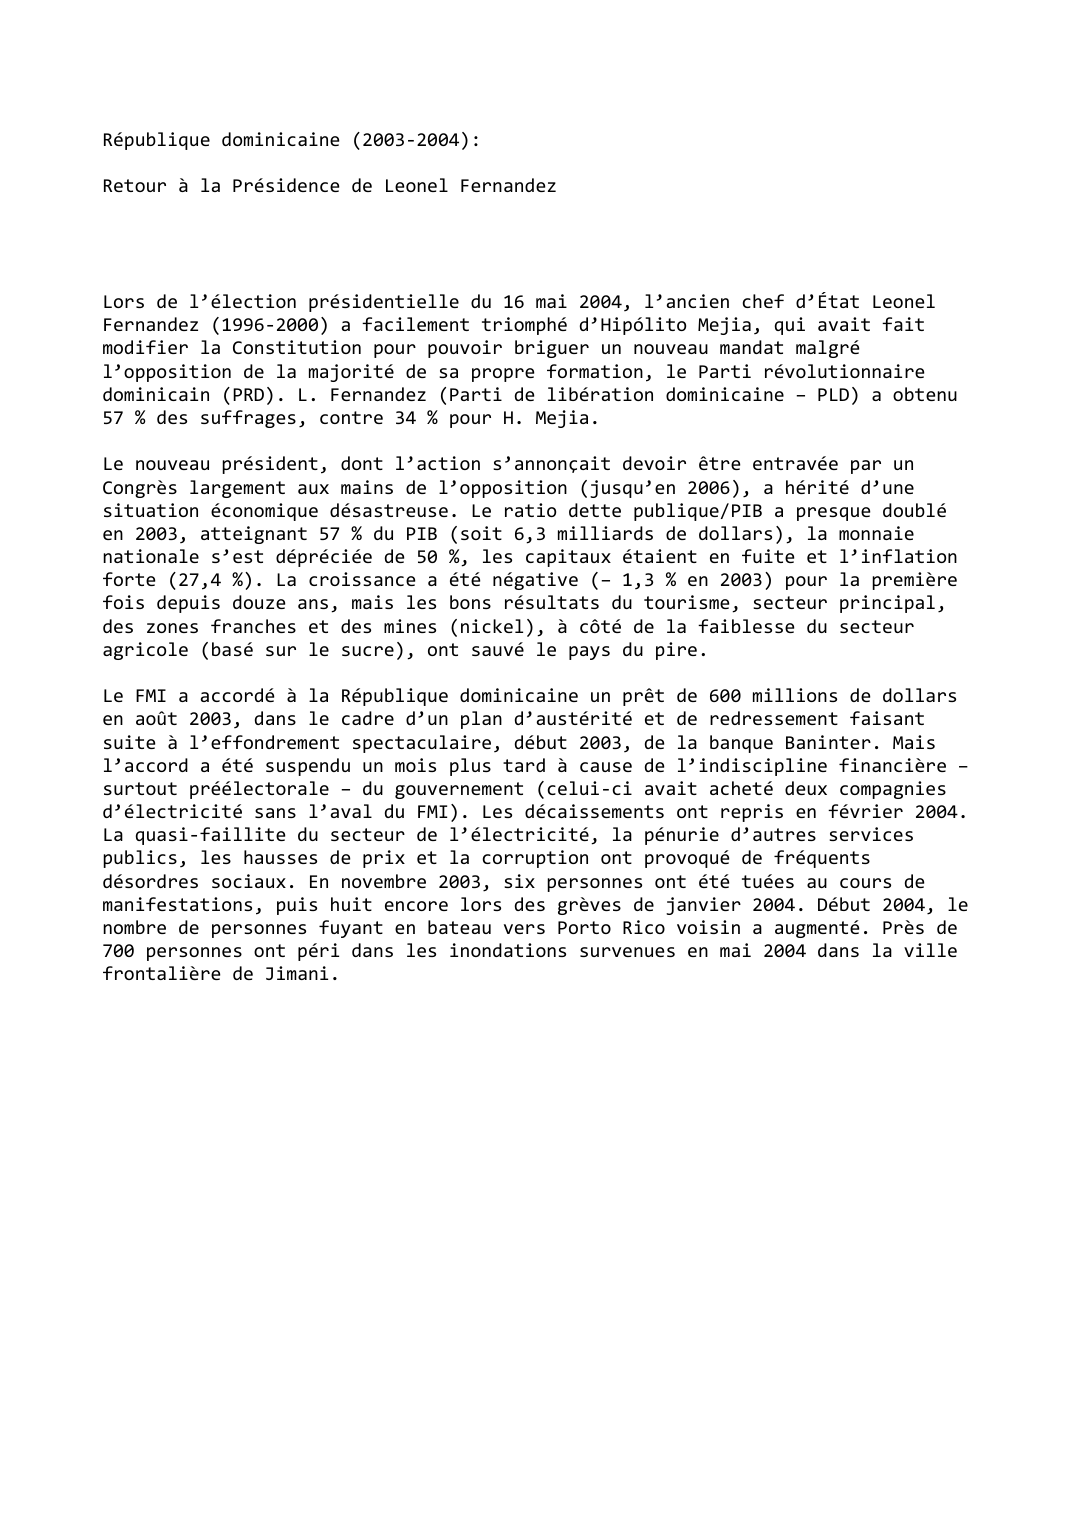 Prévisualisation du document République dominicaine (2003-2004):

Retour à la Présidence de Leonel Fernandez